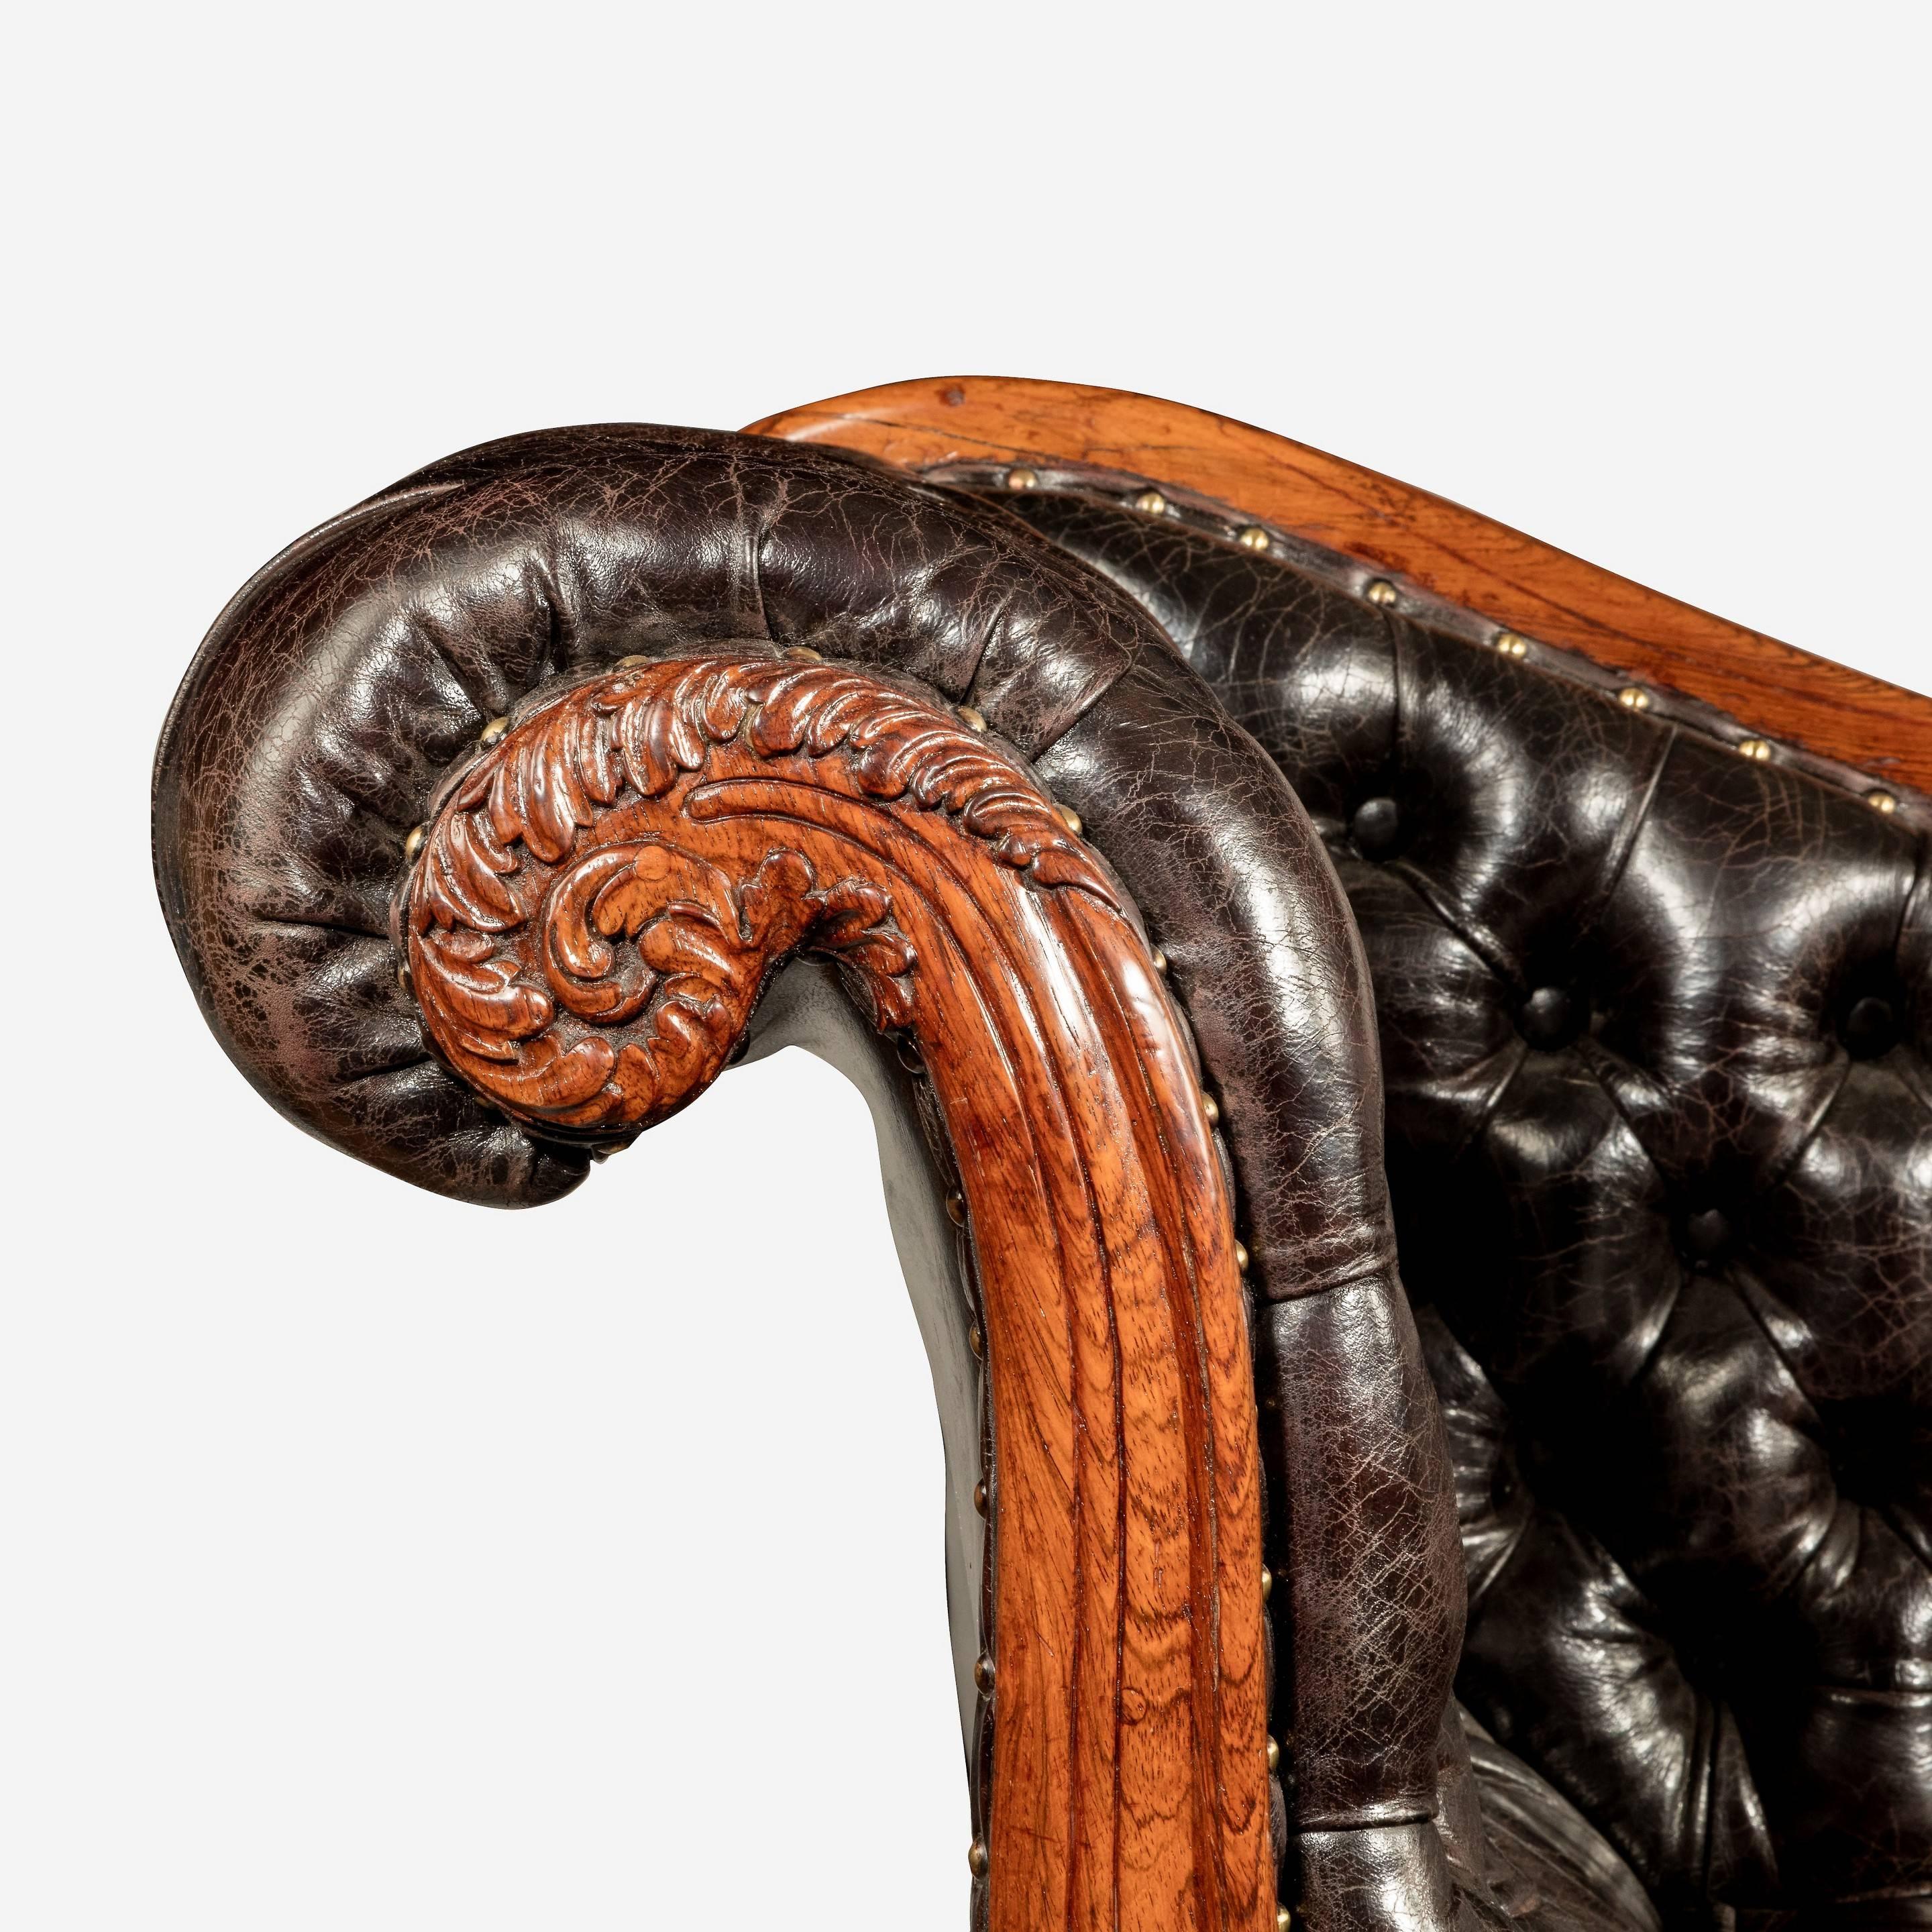 Chaise longue en bois de rose William IV attribuée à Gillows, avec des terminaux et des accoudoirs en volutes profondément sculptés, et des pieds fuselés tournés sur des roulettes déguisées.